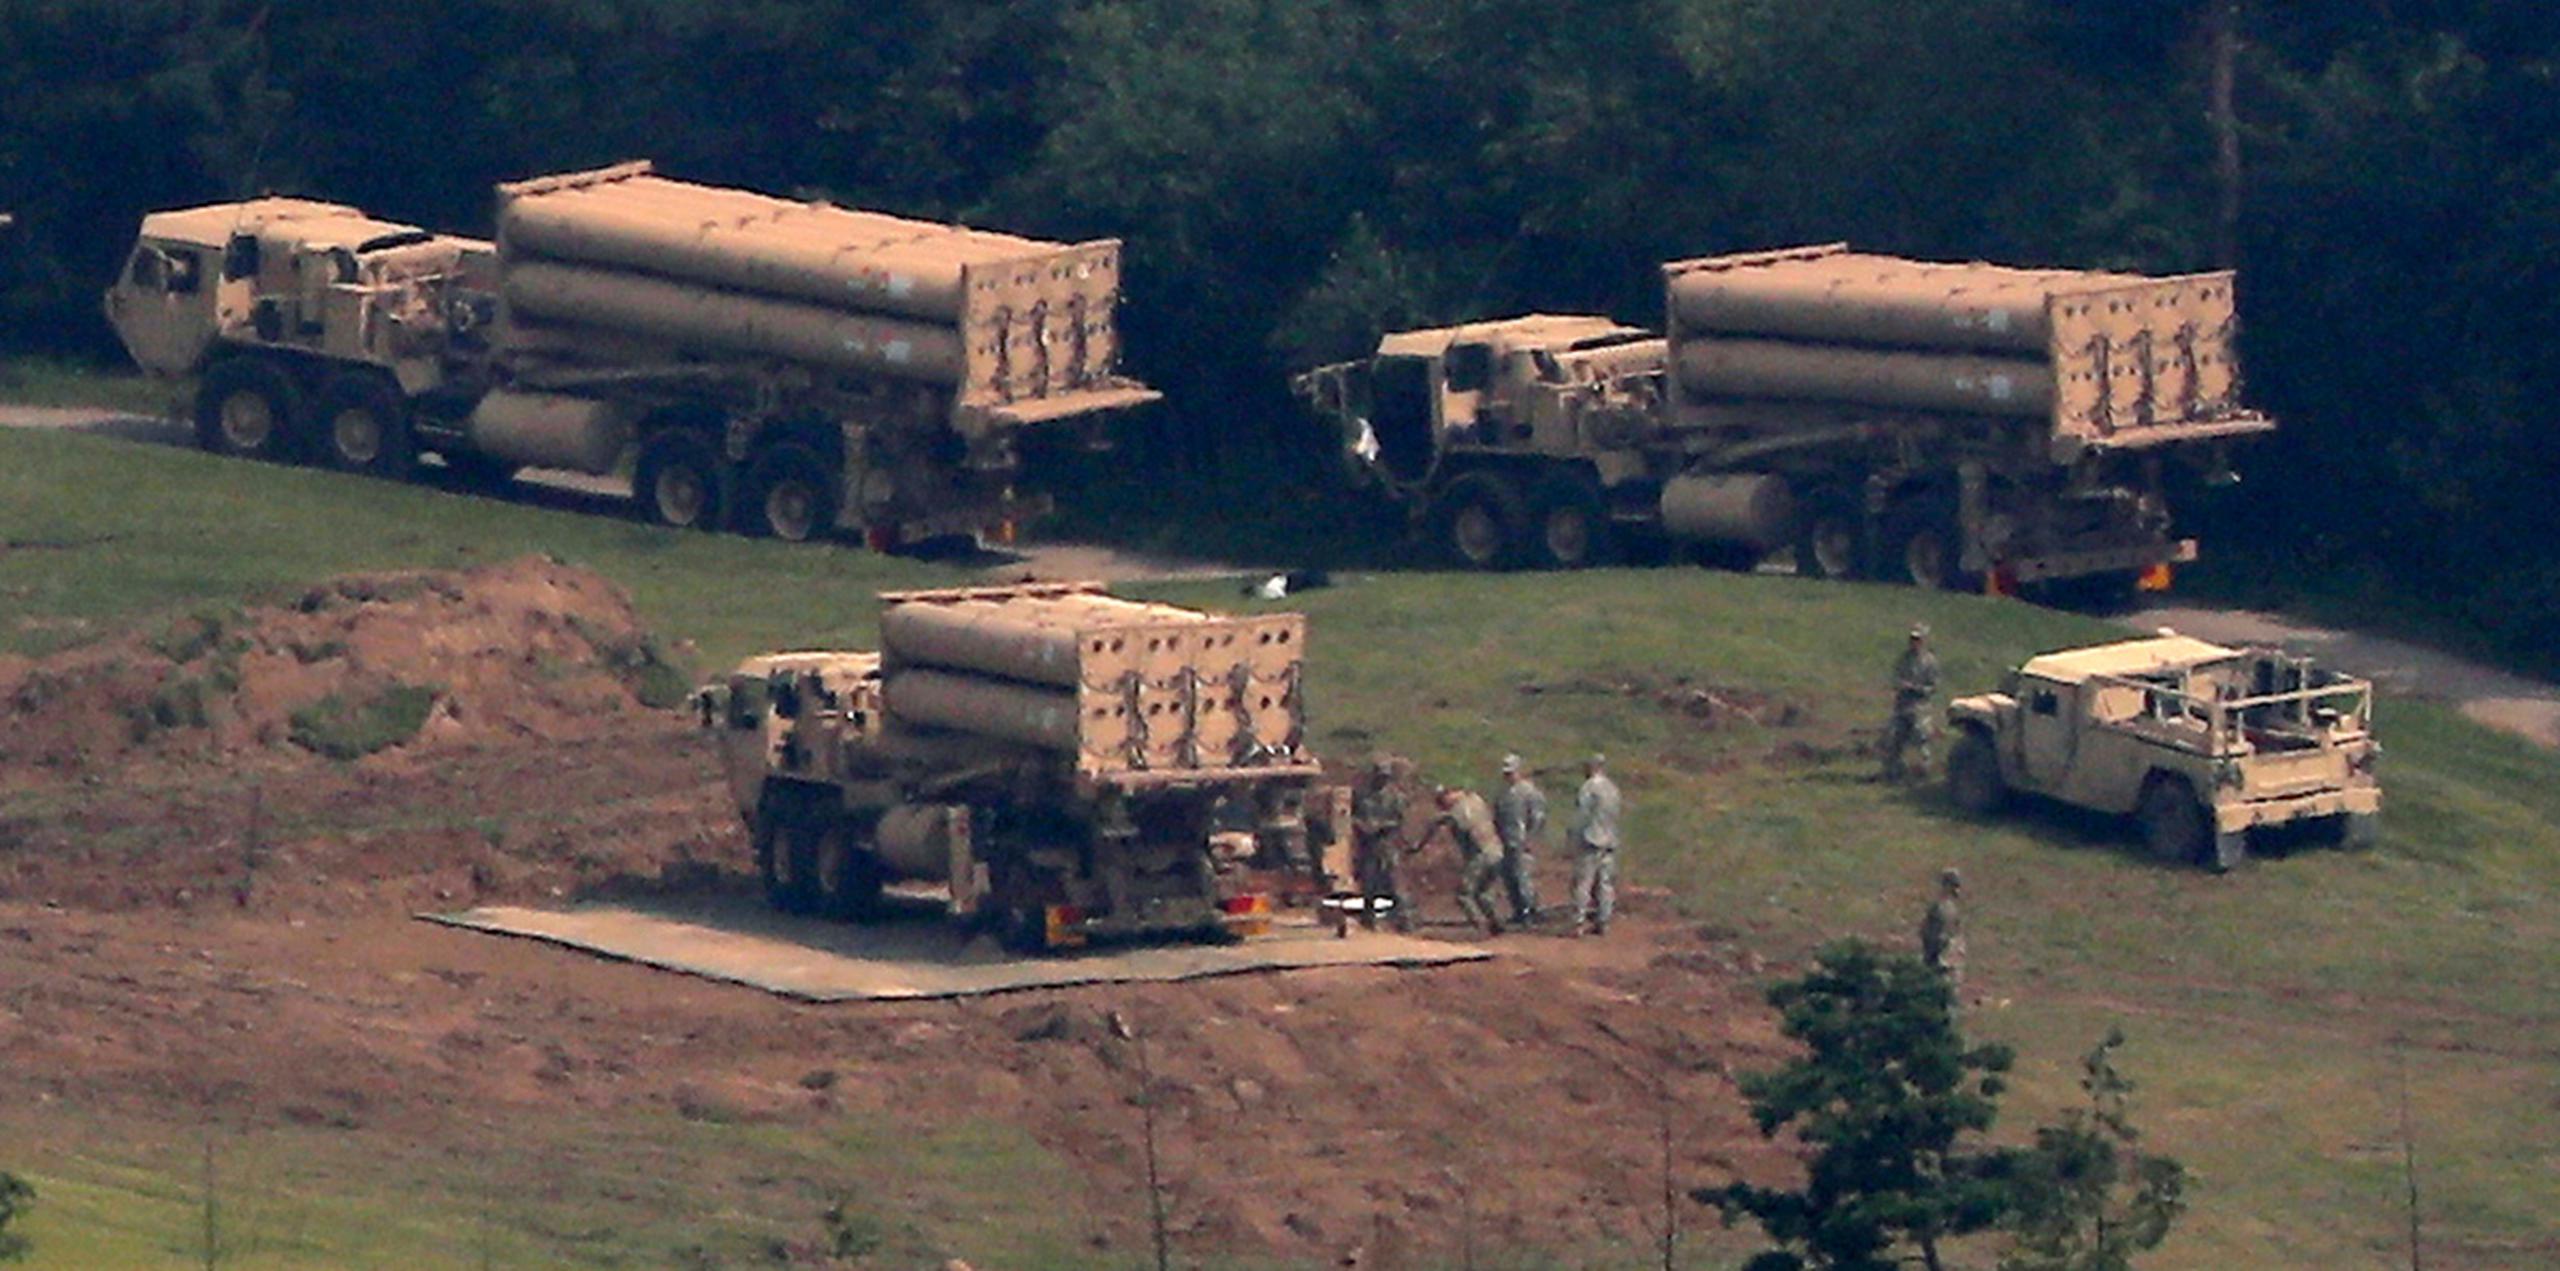 Un sistema antimisiles estadounidense, el Terminal High-Altitude Area Defense o THAAD, visto en un campo de golf en Seongju, Corea del Sur. (AP)